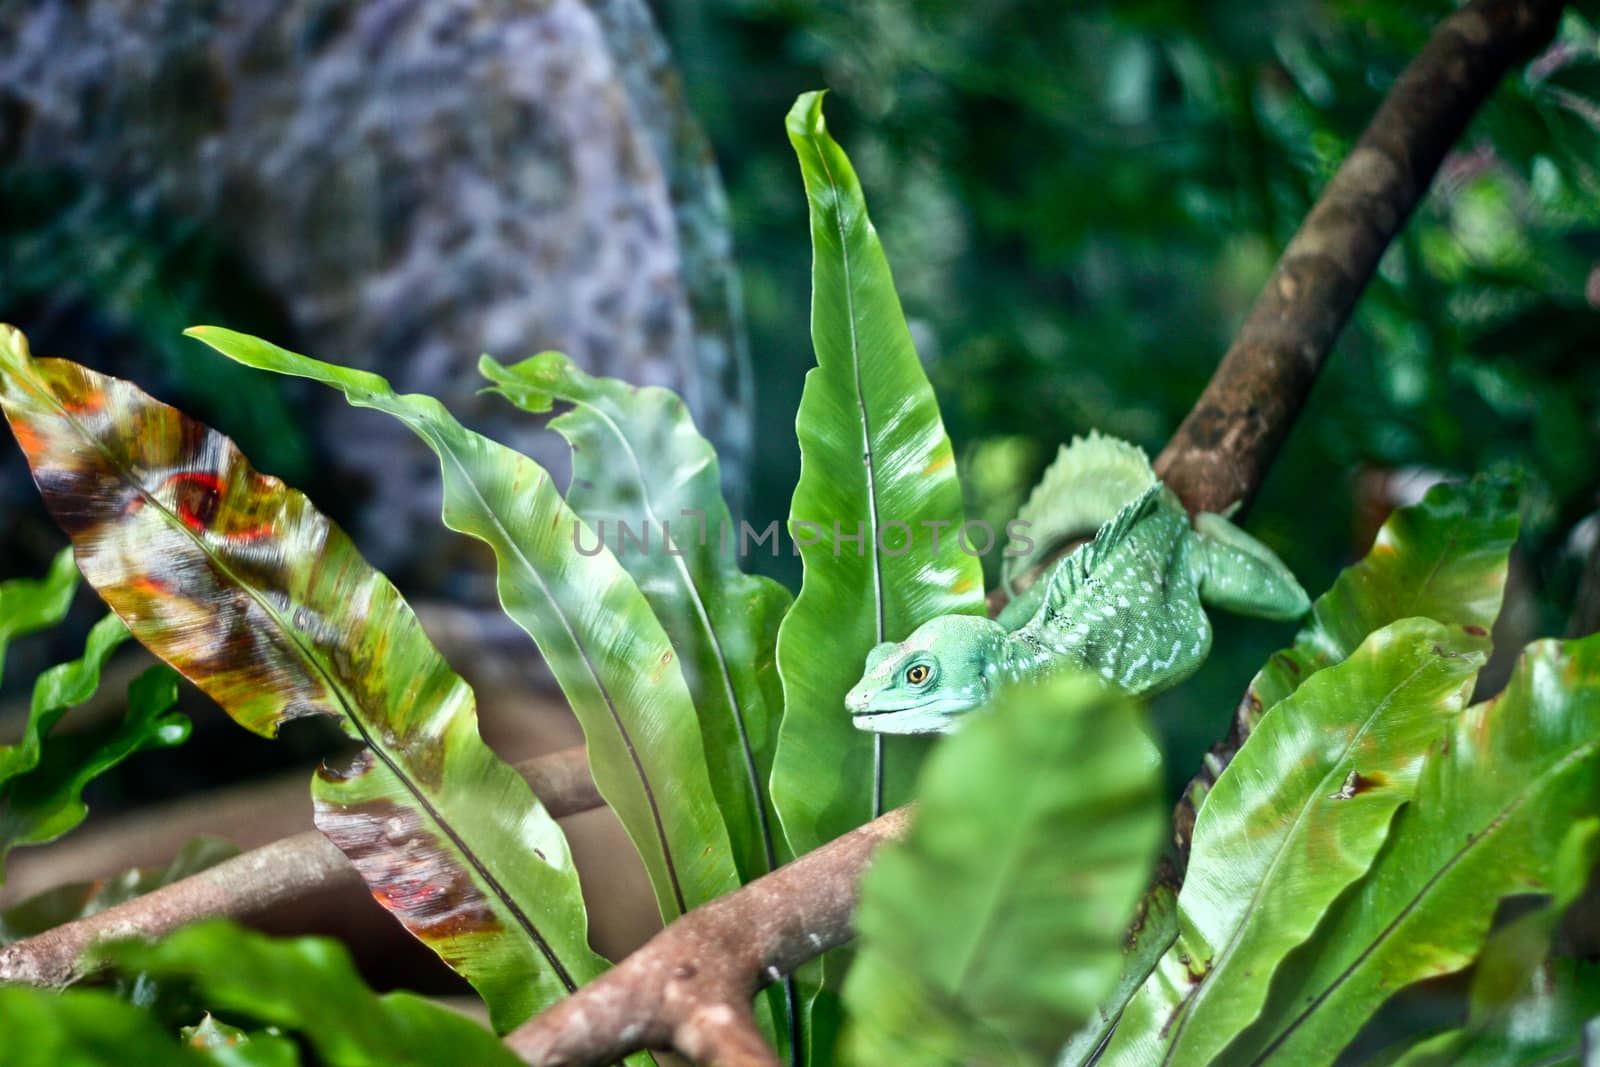 A lizard is lying on a branch